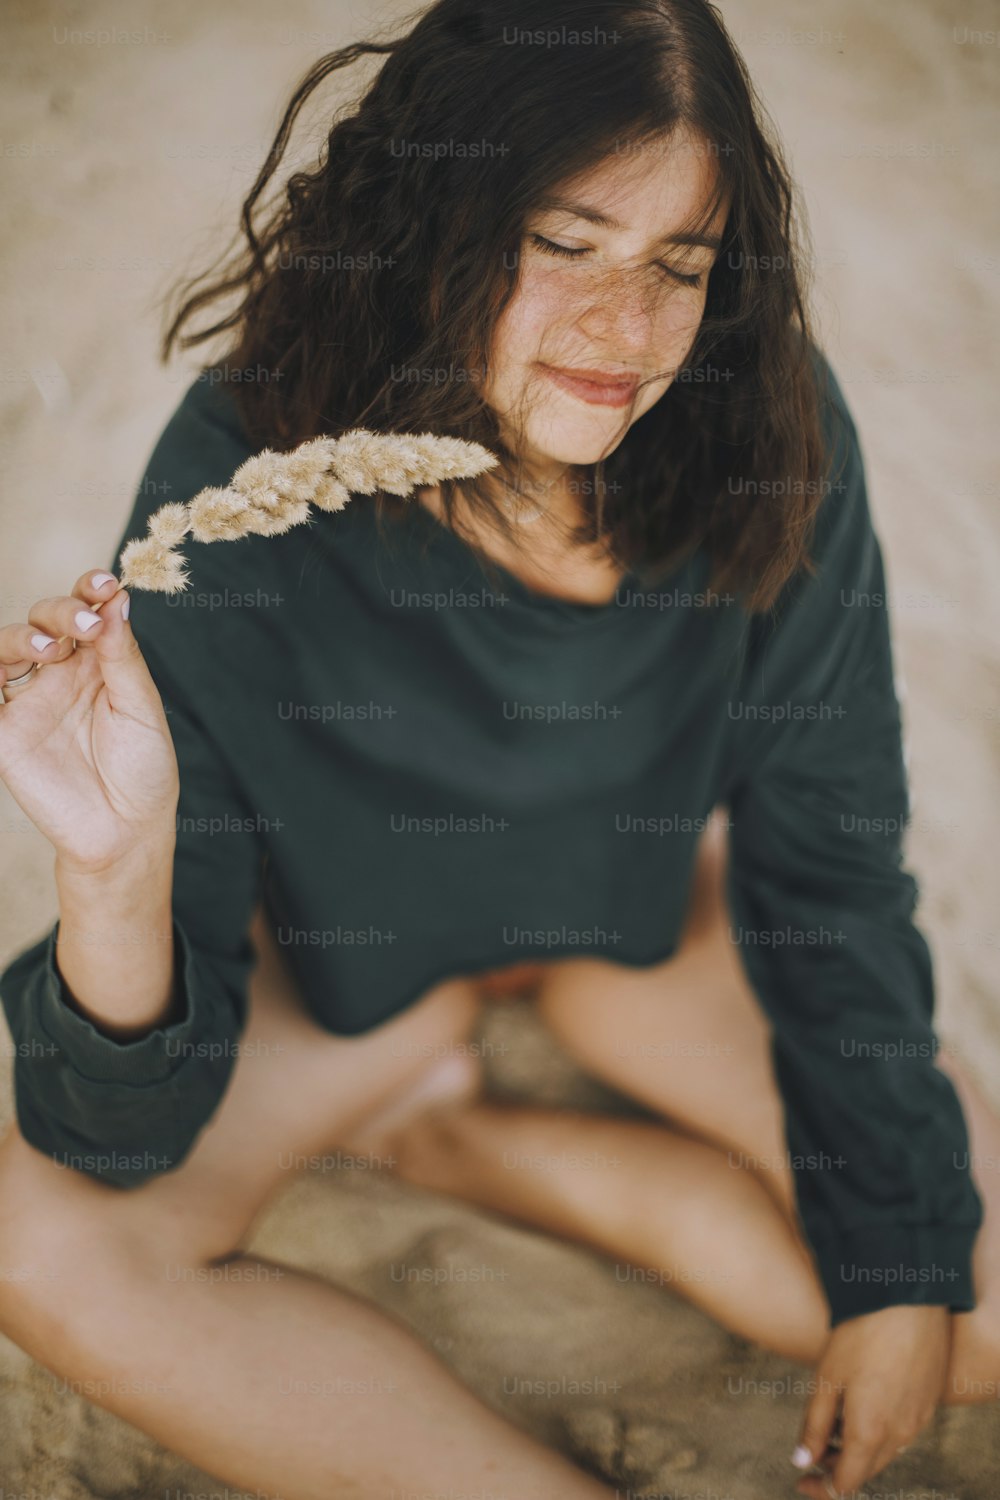 허브를 들고 모래 해변에 앉아 있는 세련된 힙스터 소녀. 현대적인 수영복과 스웨터를 입은 세련된 검게 그을린 젊은 여성이 해변에서 휴식을 취하고 있습니다. 여름 방학. 평온한